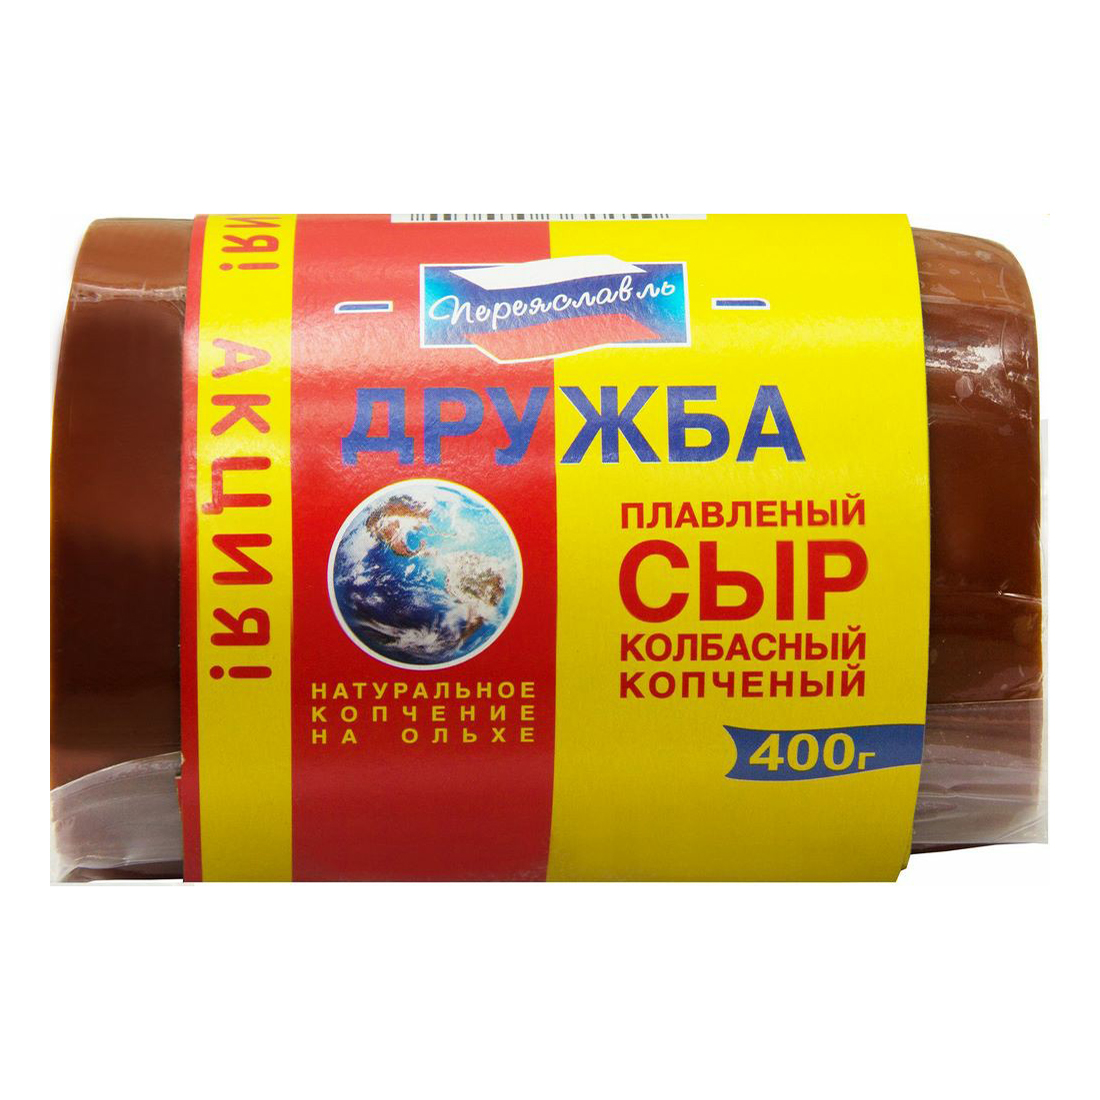 Сыр плавленый «Переяславль» Колбасный копченый 30%, 400 г